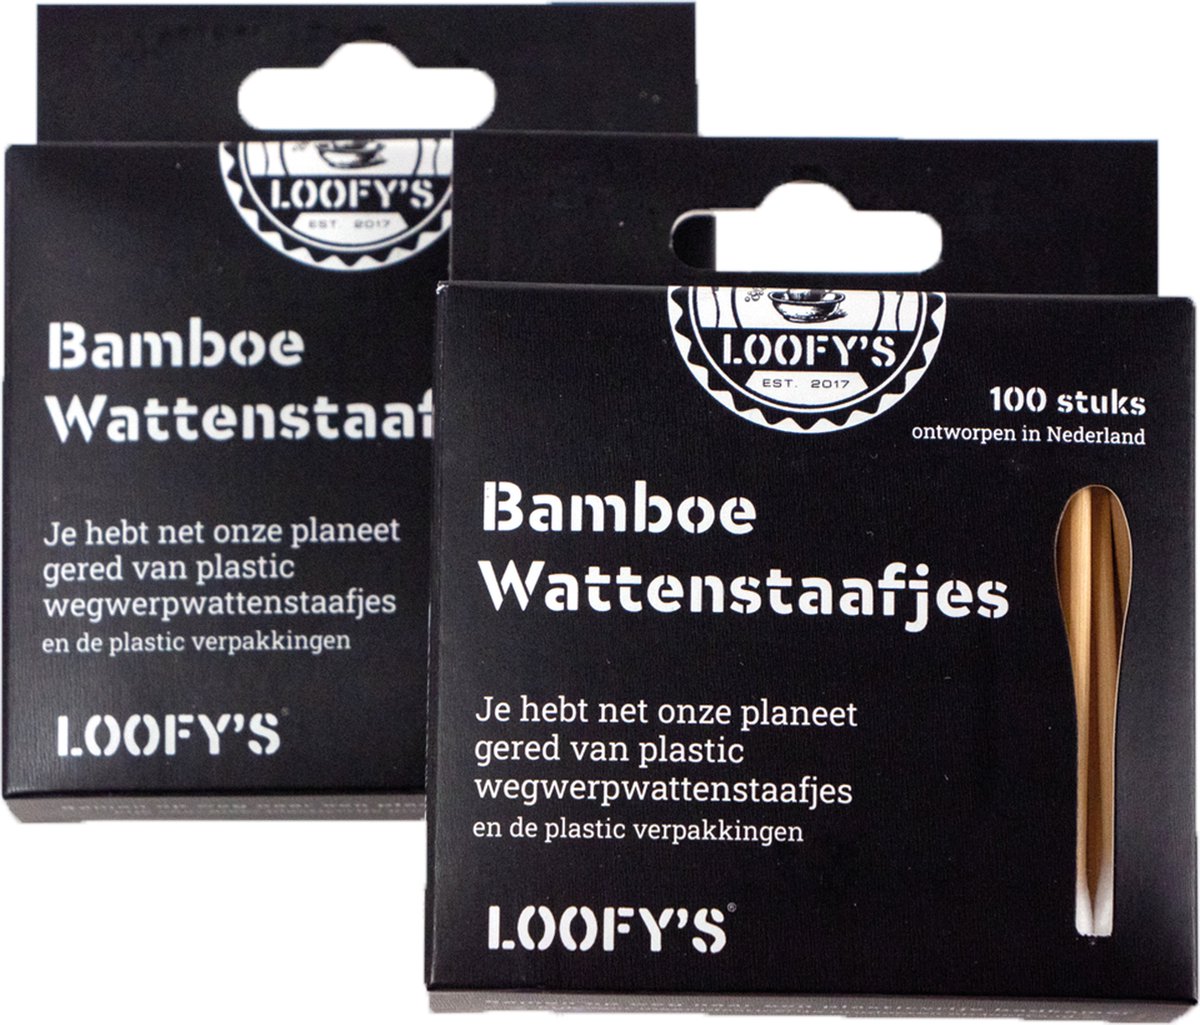 LOOFY'S - Duurzame Bamboe Wattenstaafjes - [200 stuks] - Verander Jouw Rituelen Met 100% Plasticvrij - Loofys